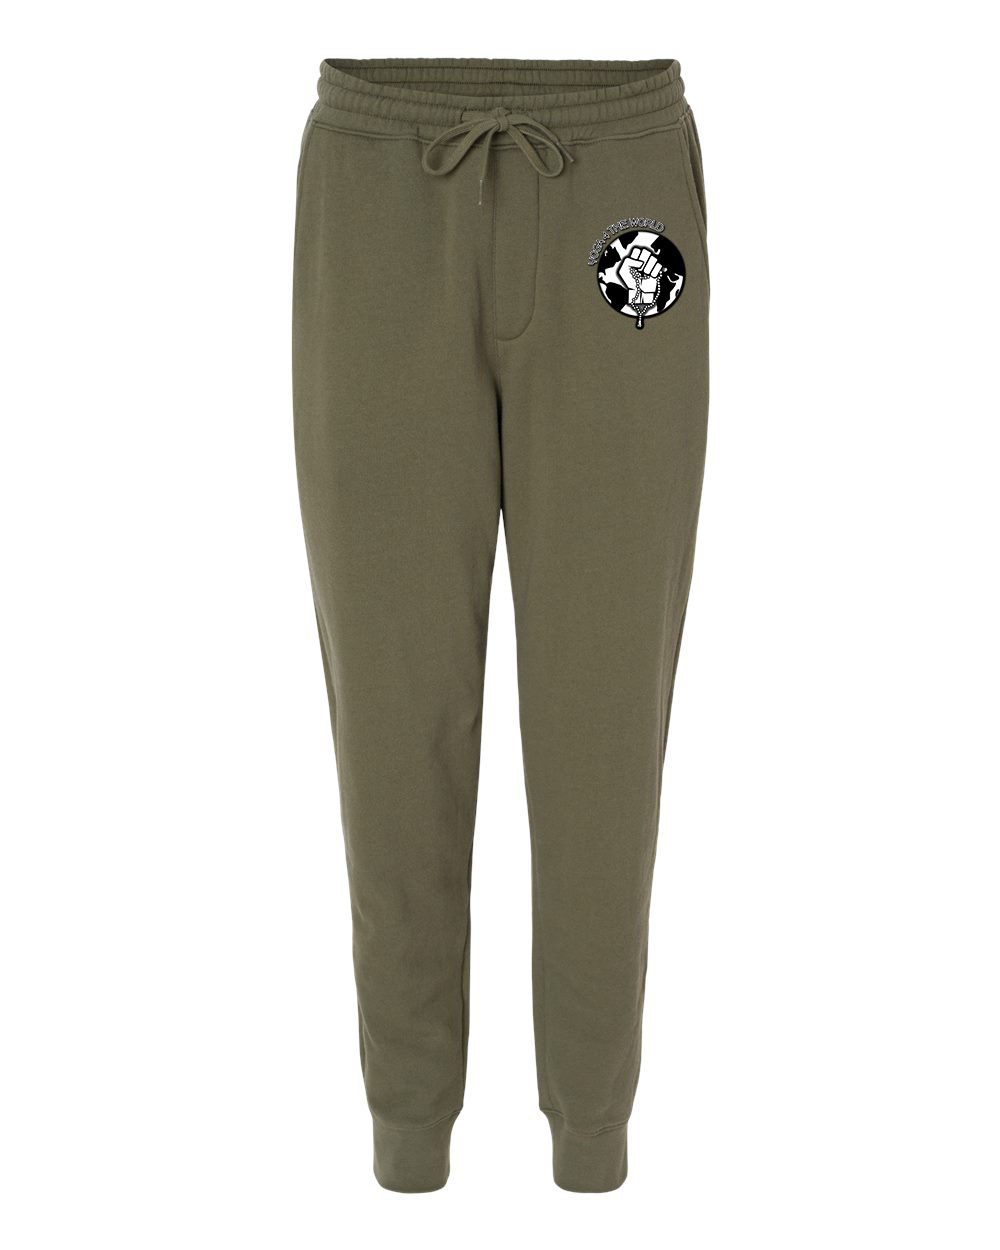 Yoga4TheWorld Army Fleece Pants